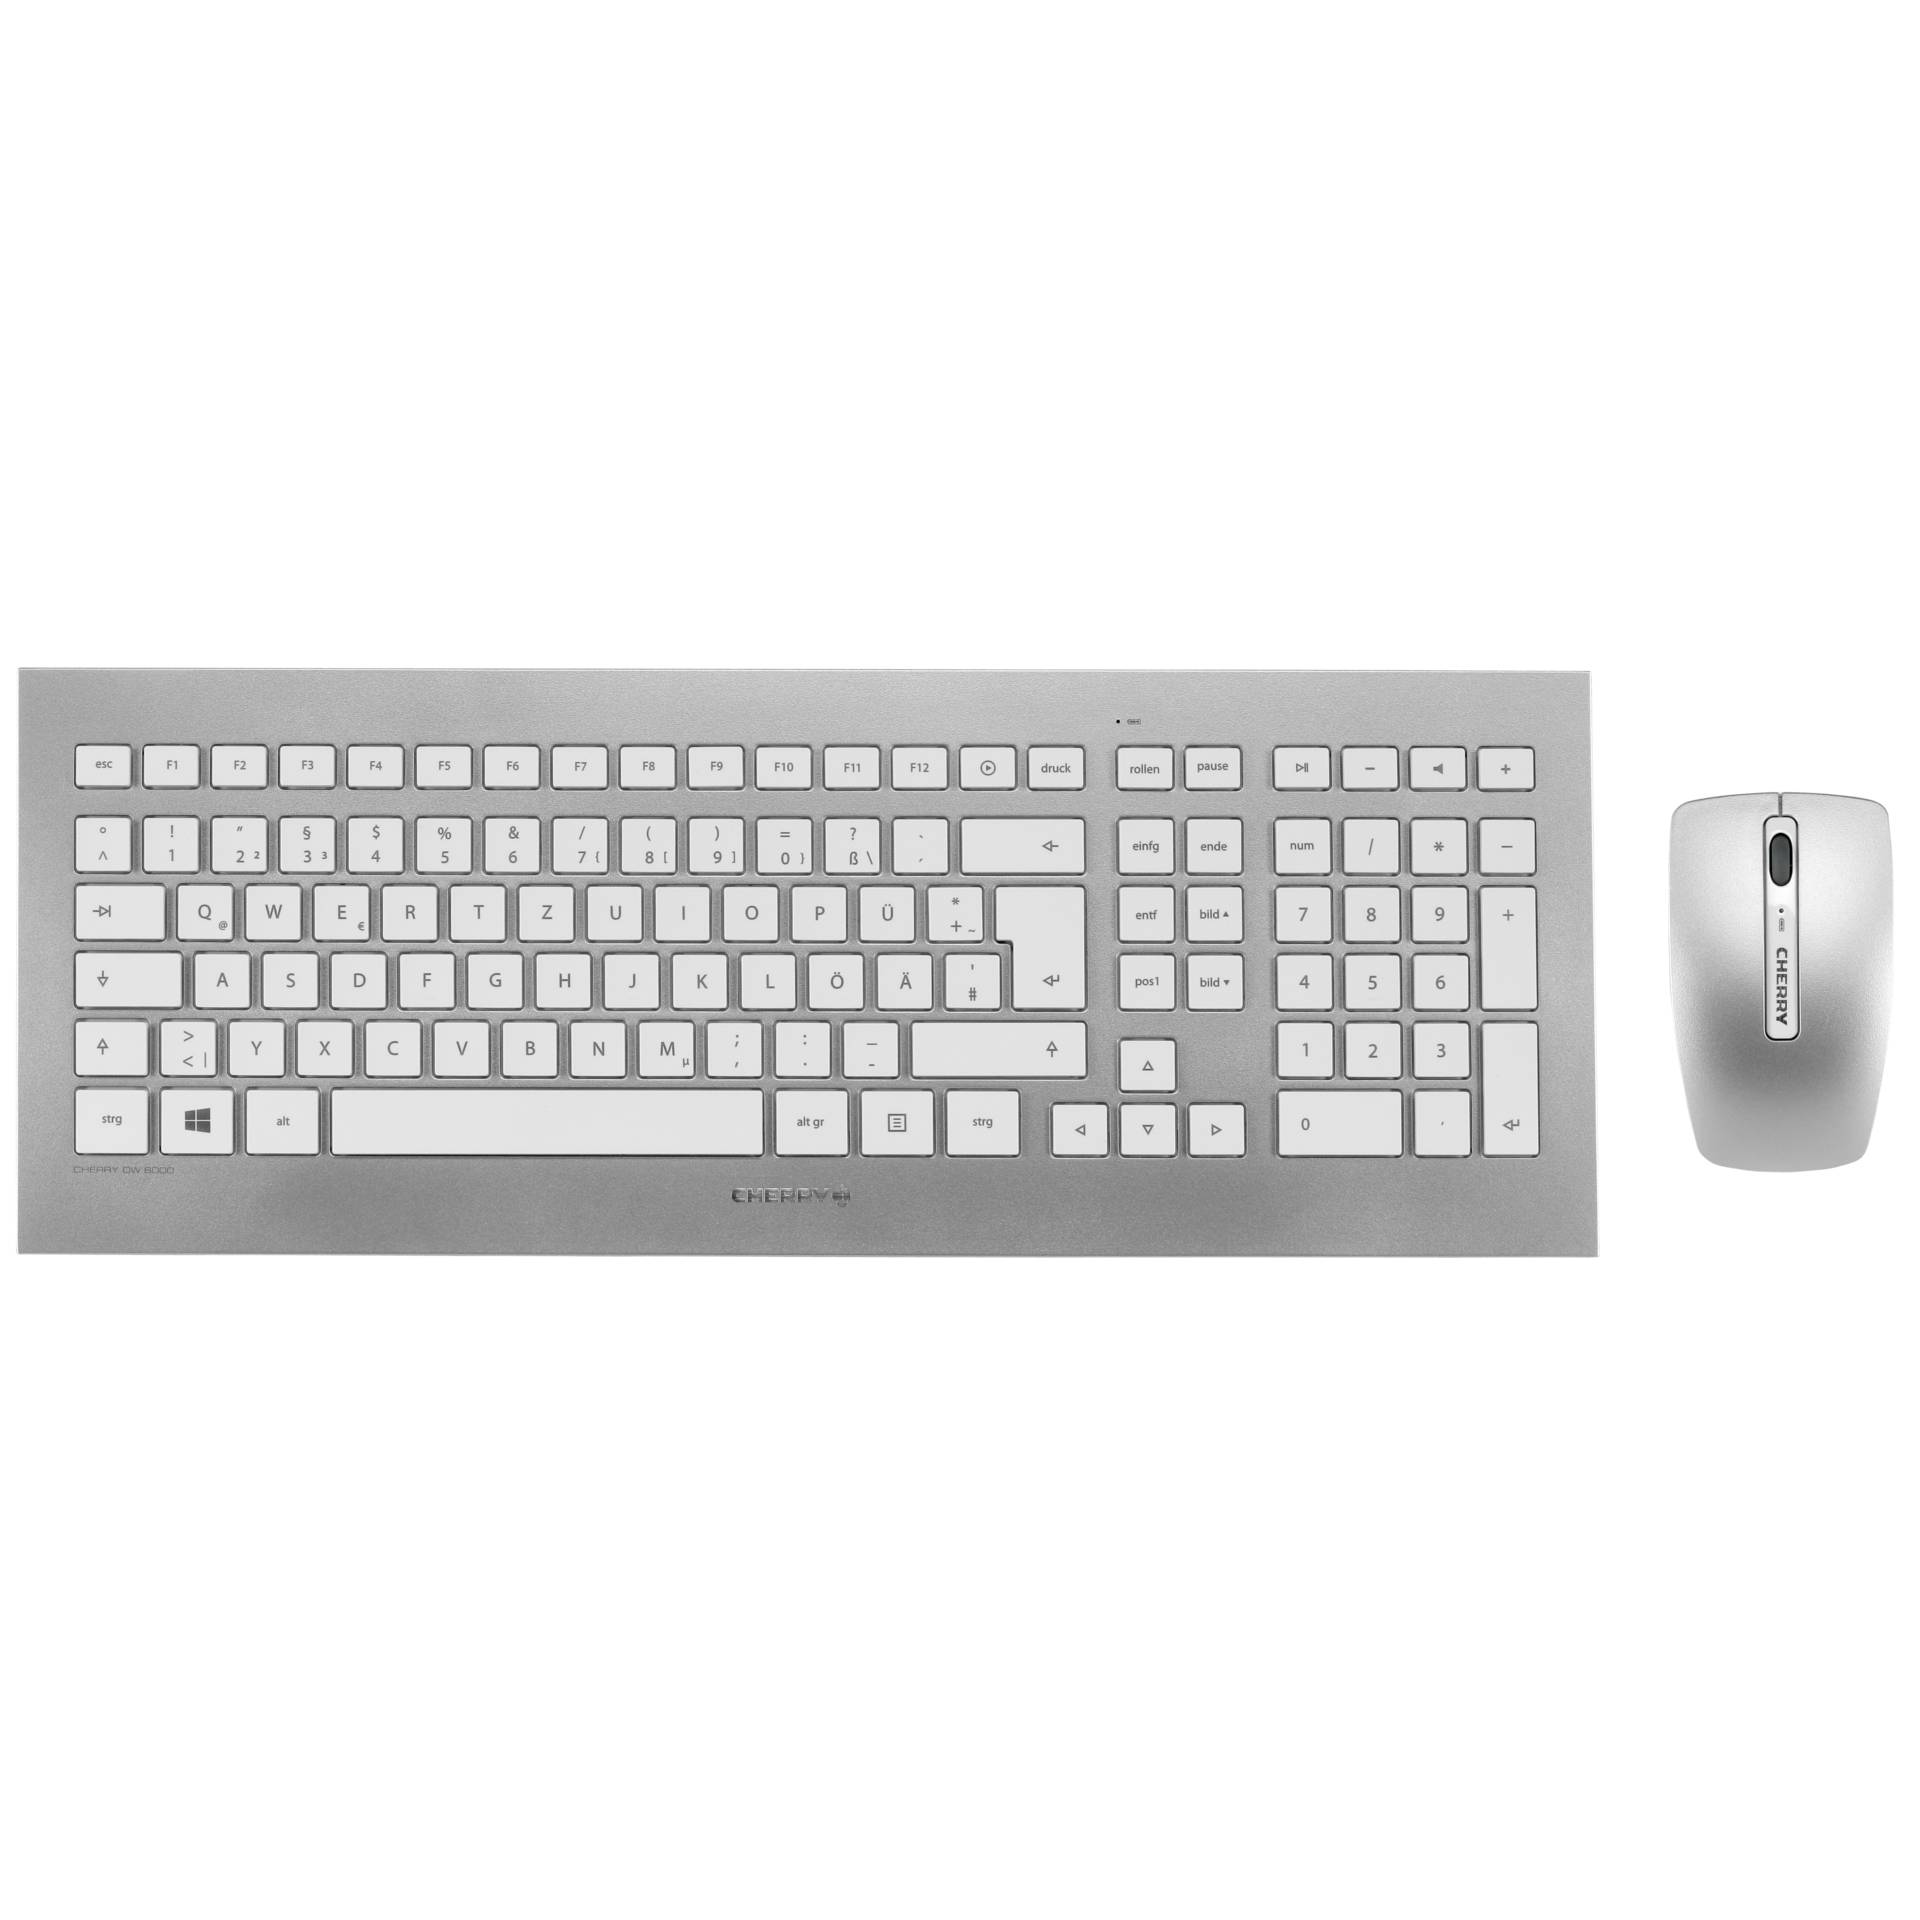 Cherry DW 8000 weiss Tastatur-Maus-Kombination mit Laserbeschriftung